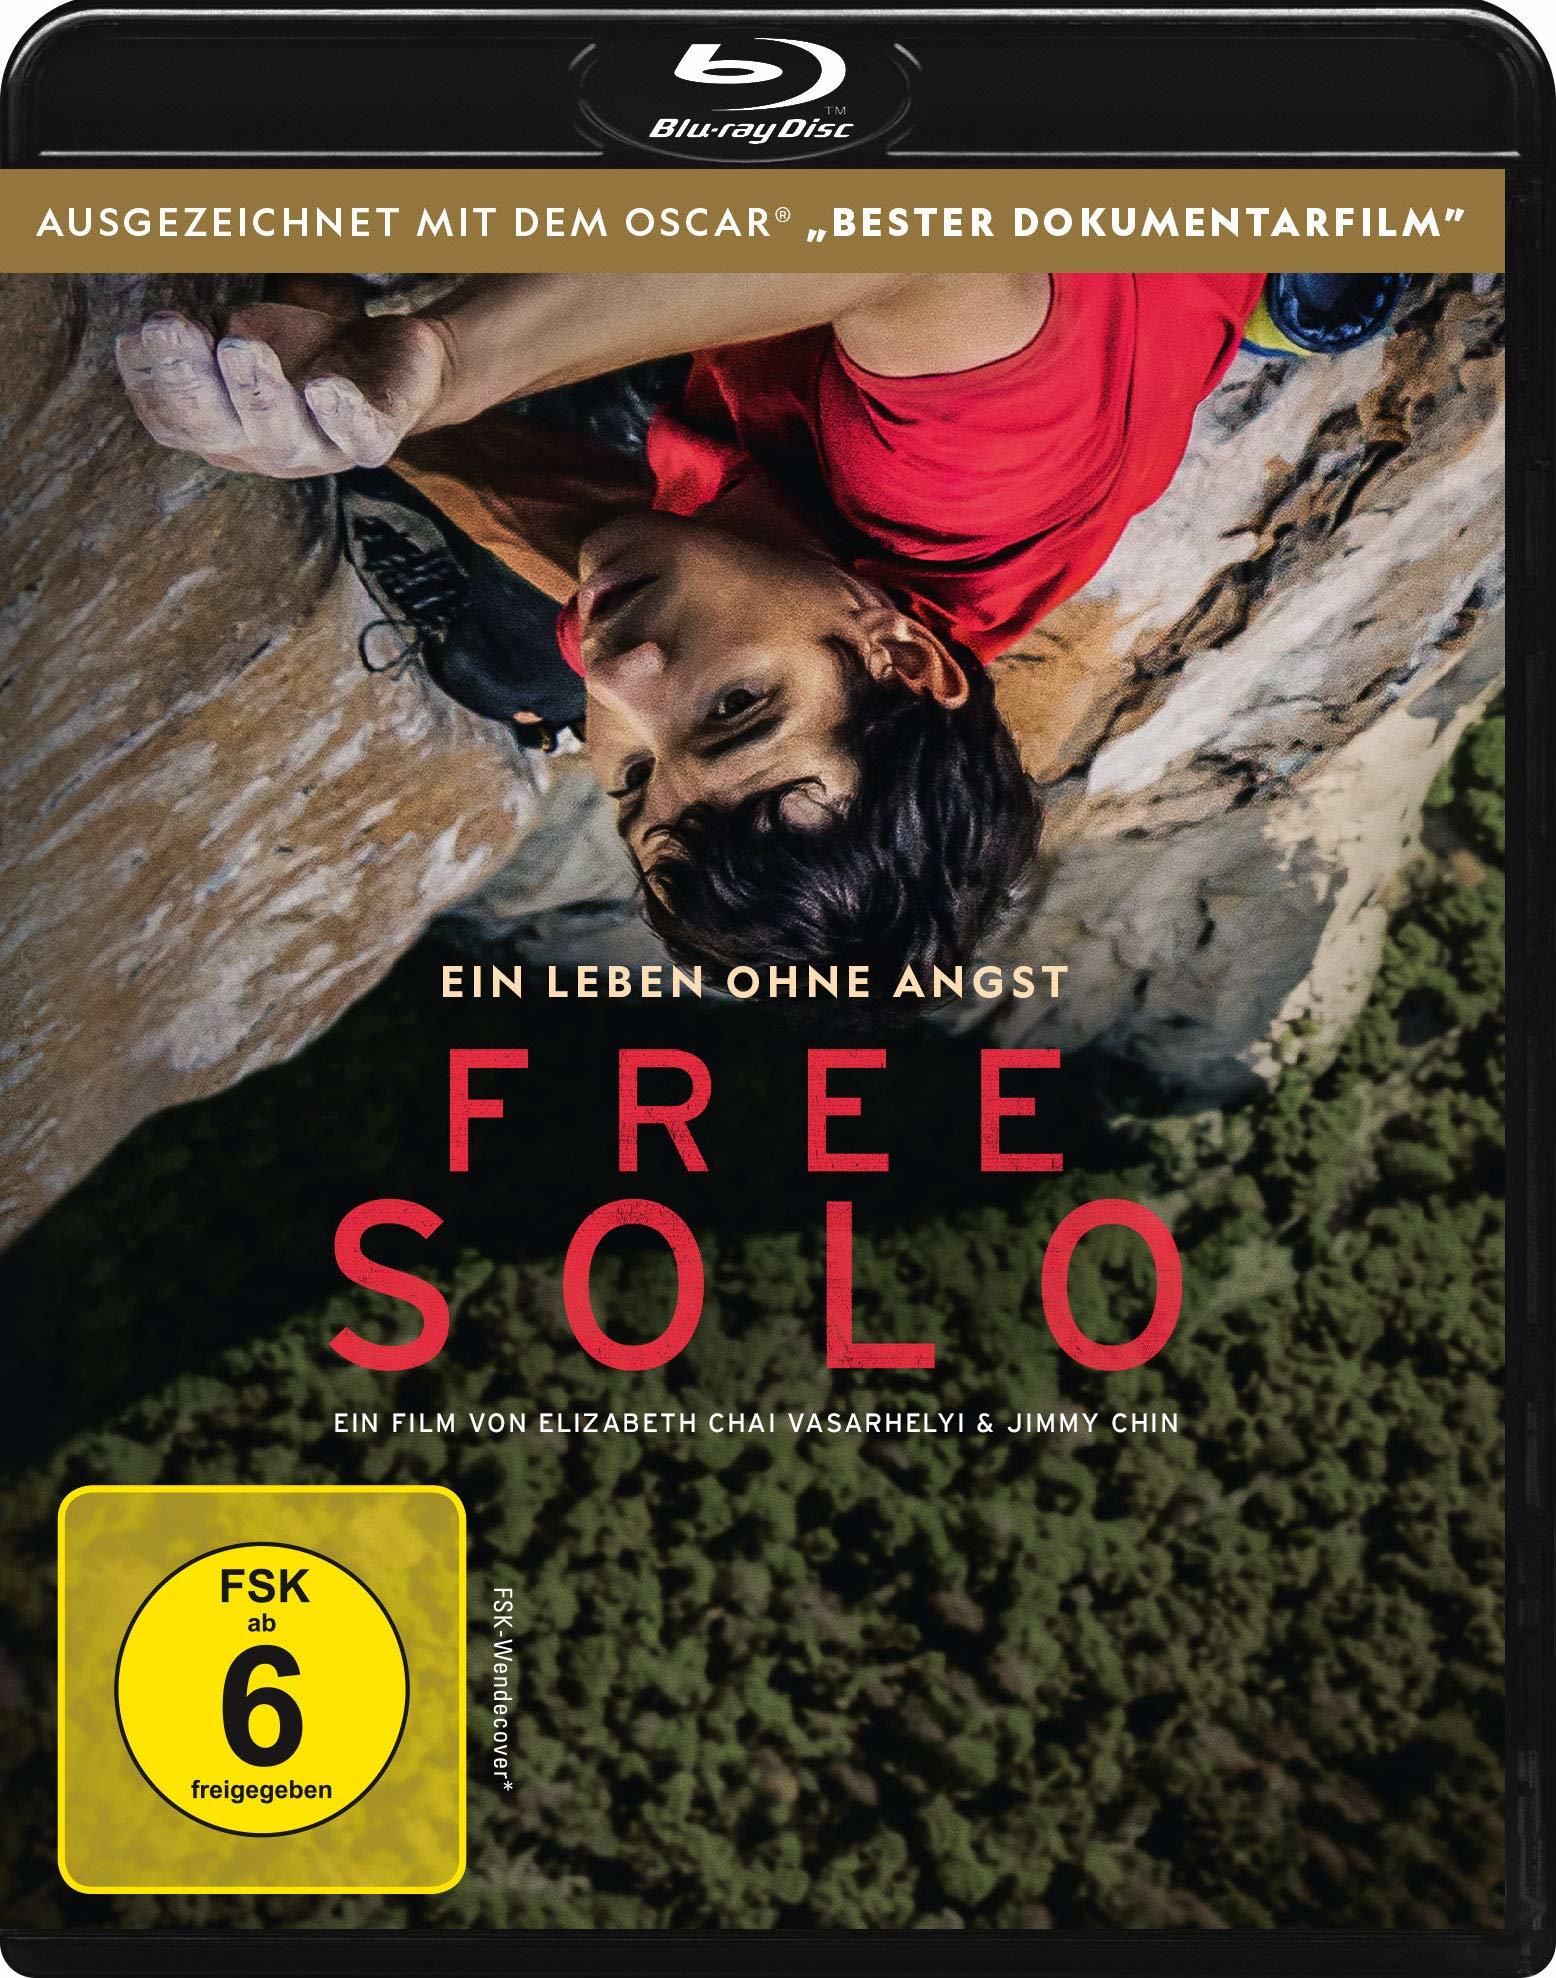 徒手攀岩/赤手登峰(港,台) [DIY简繁英特效字幕] Free Solo 2018 2160p UHD Blu-ray HEVC DTS-HD MA 5.1-A236P5@OurBits    [49.36 GB]-1.jpg